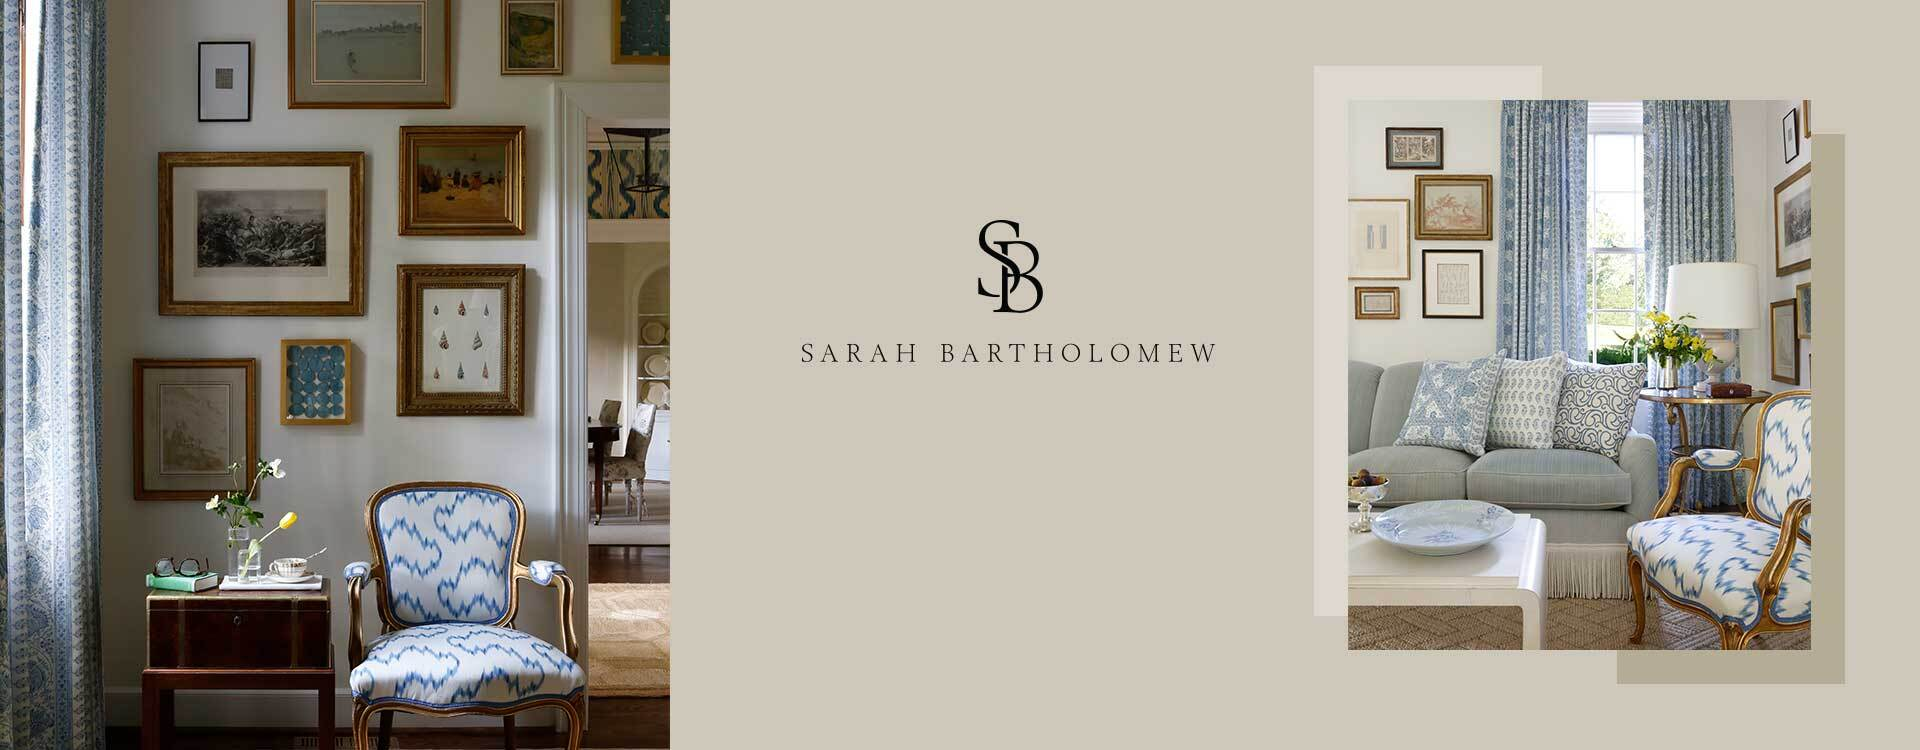 Sarah Bartholomew